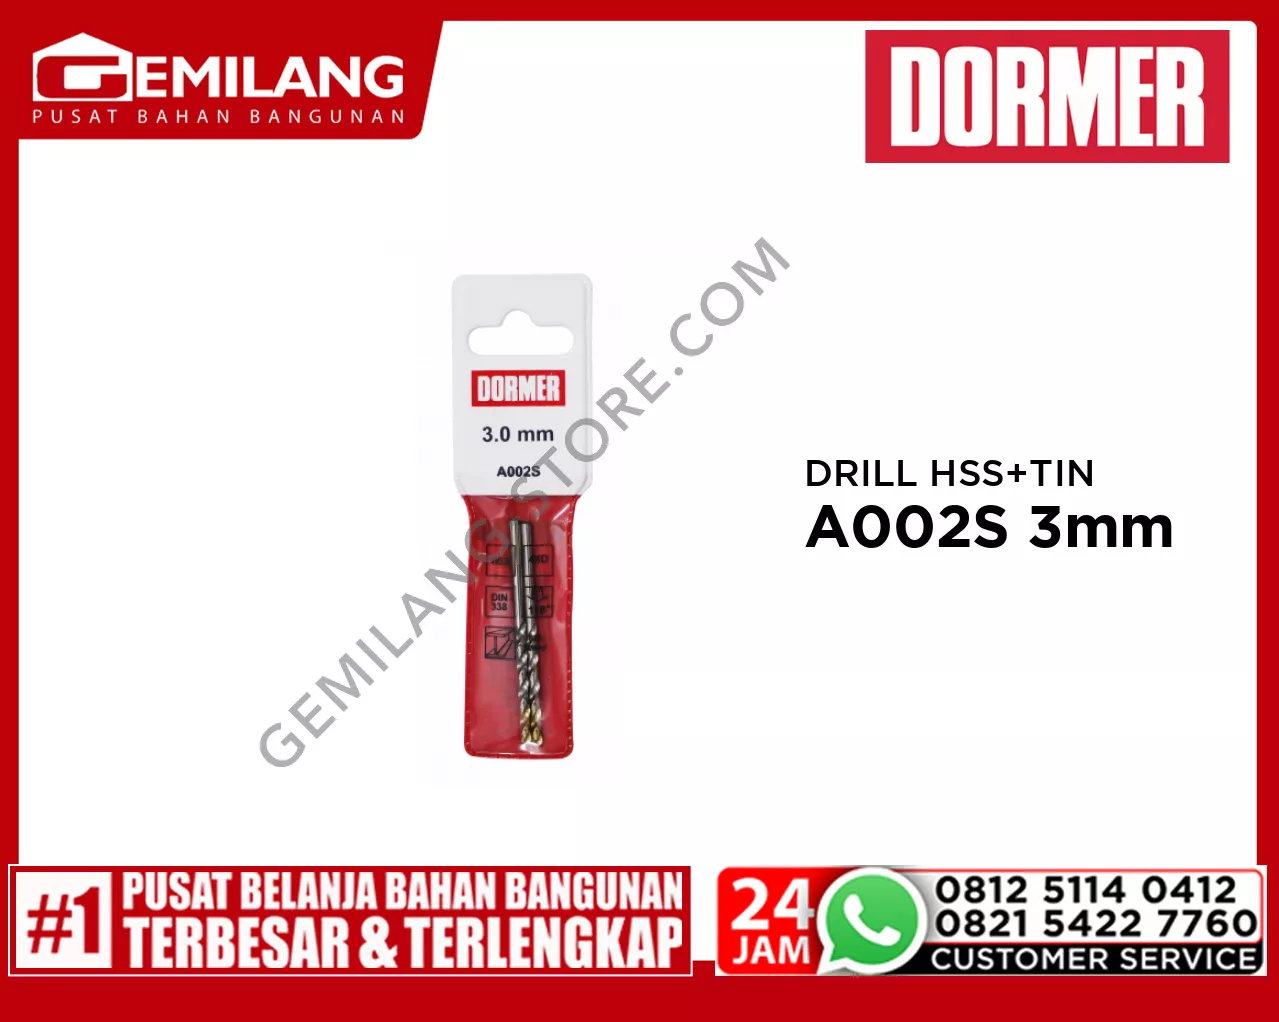 DORMER DRILL (POUCH) HSS + TIN A002S 3mm